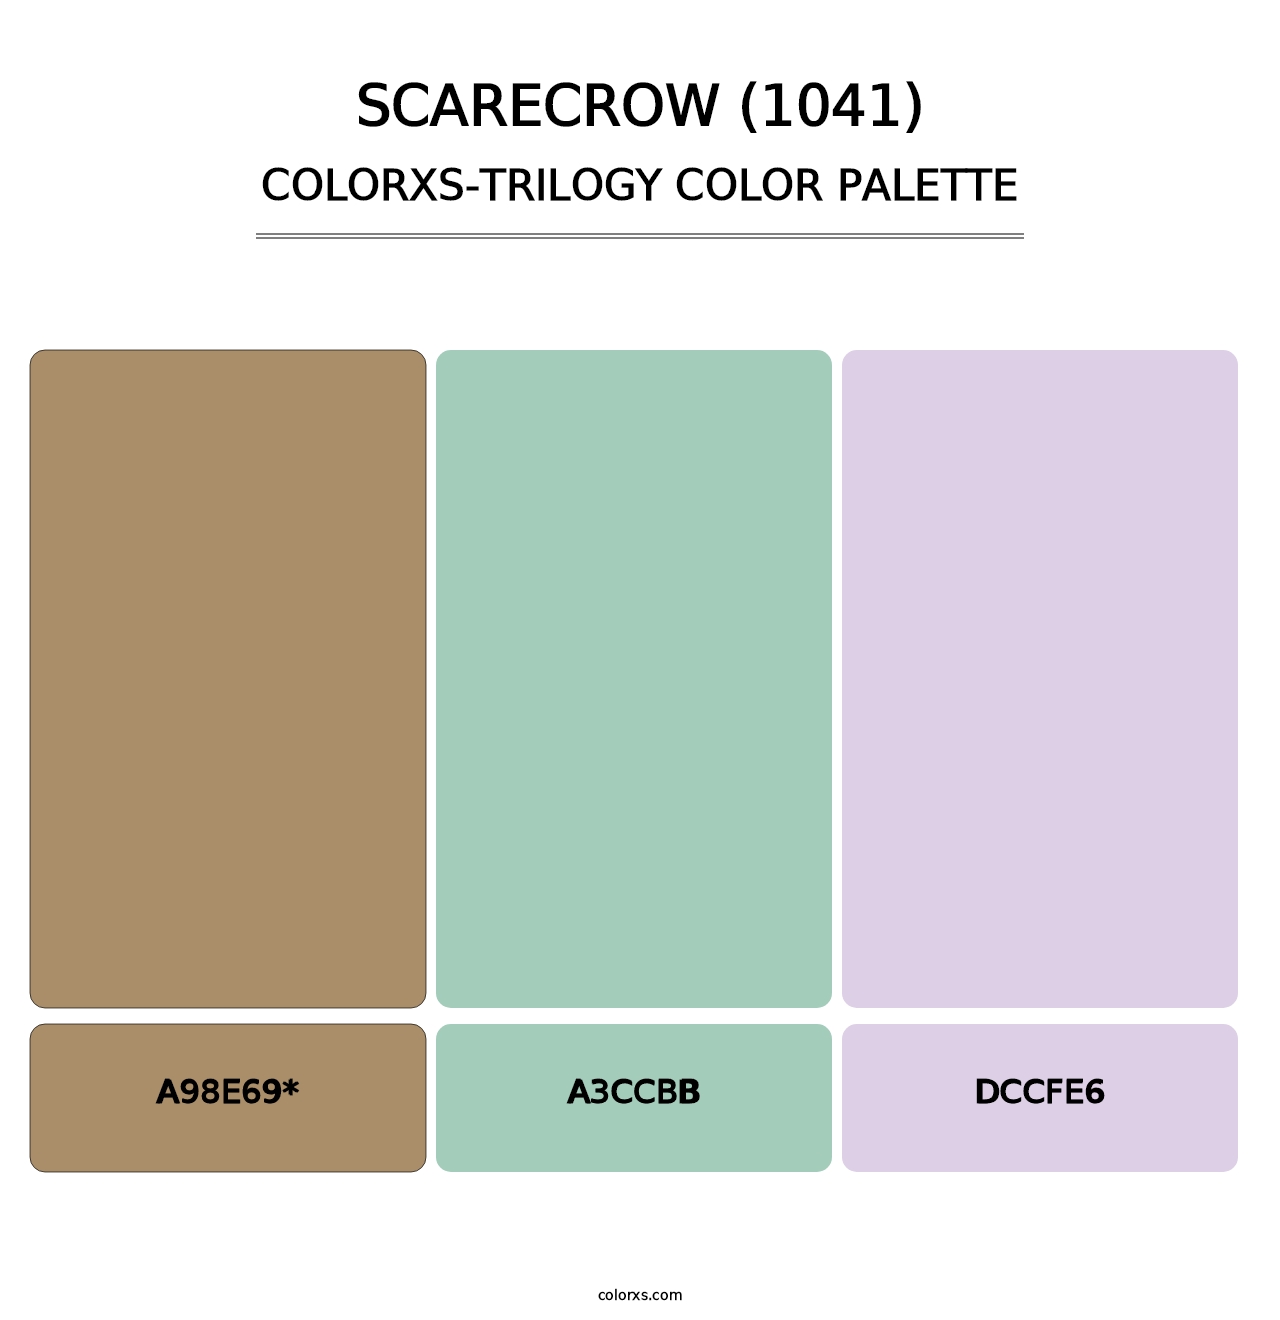 Scarecrow (1041) - Colorxs Trilogy Palette